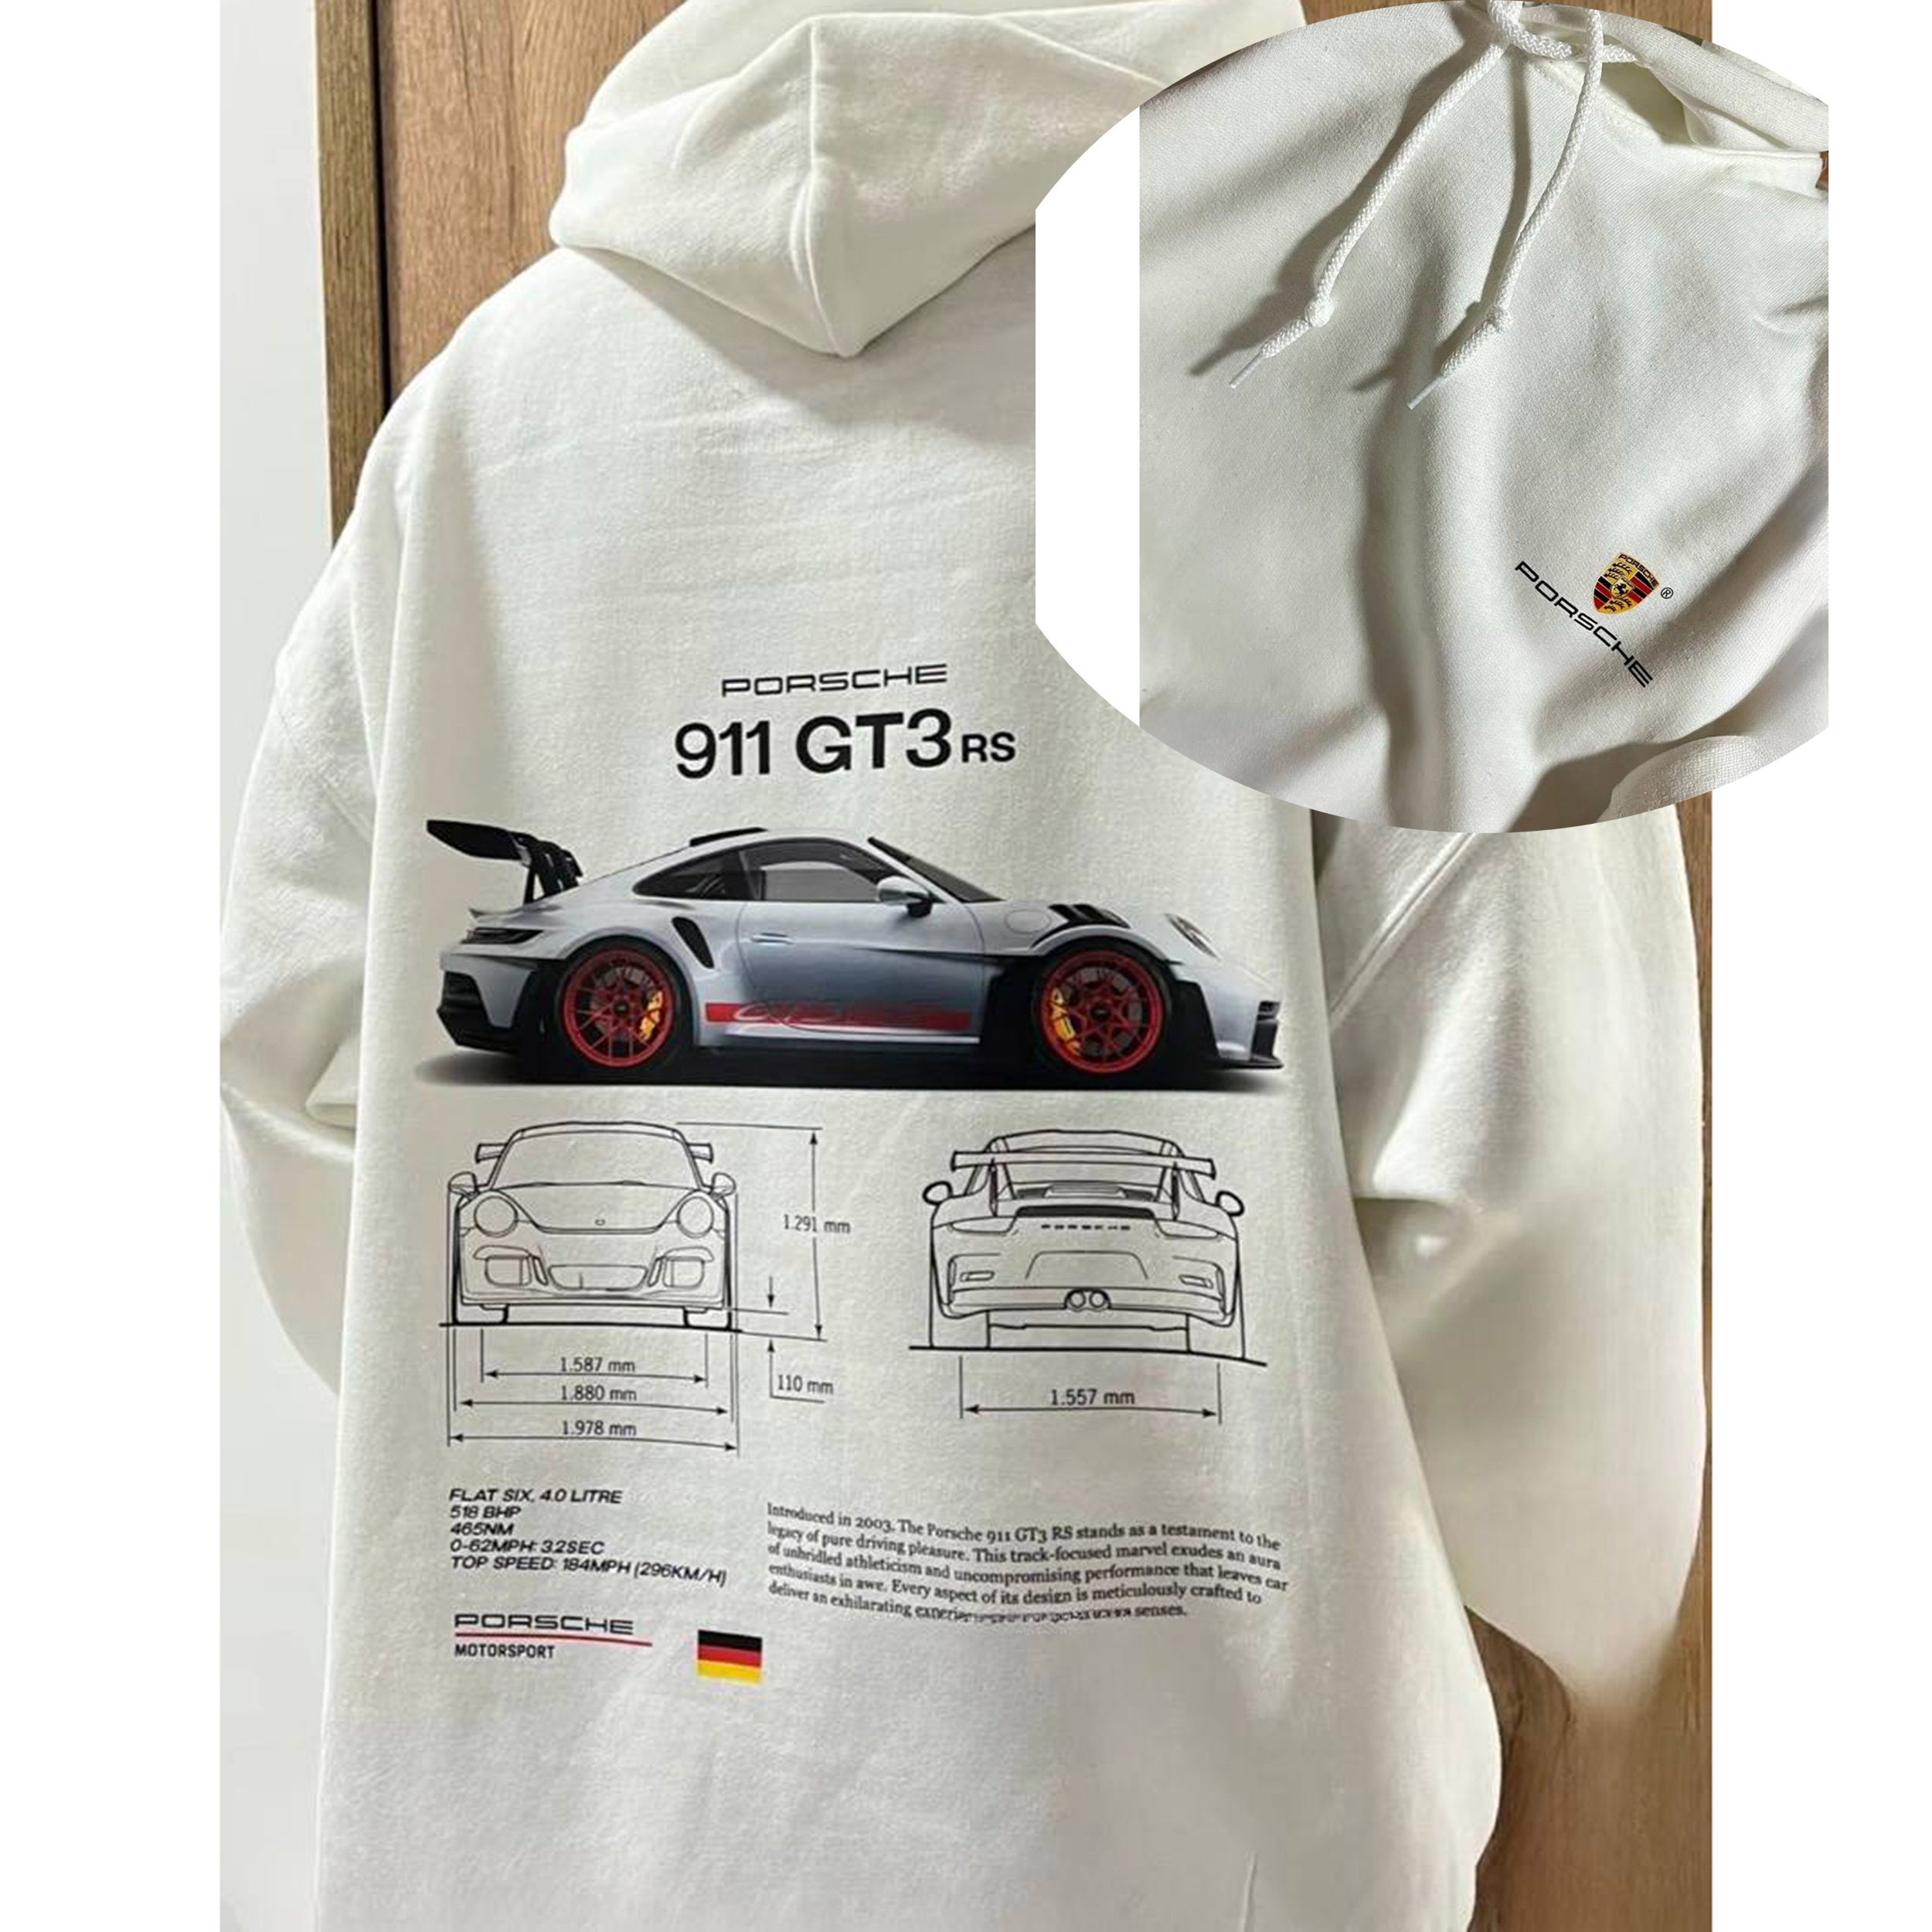 Porsche 911 Aufkleber - T-shirt